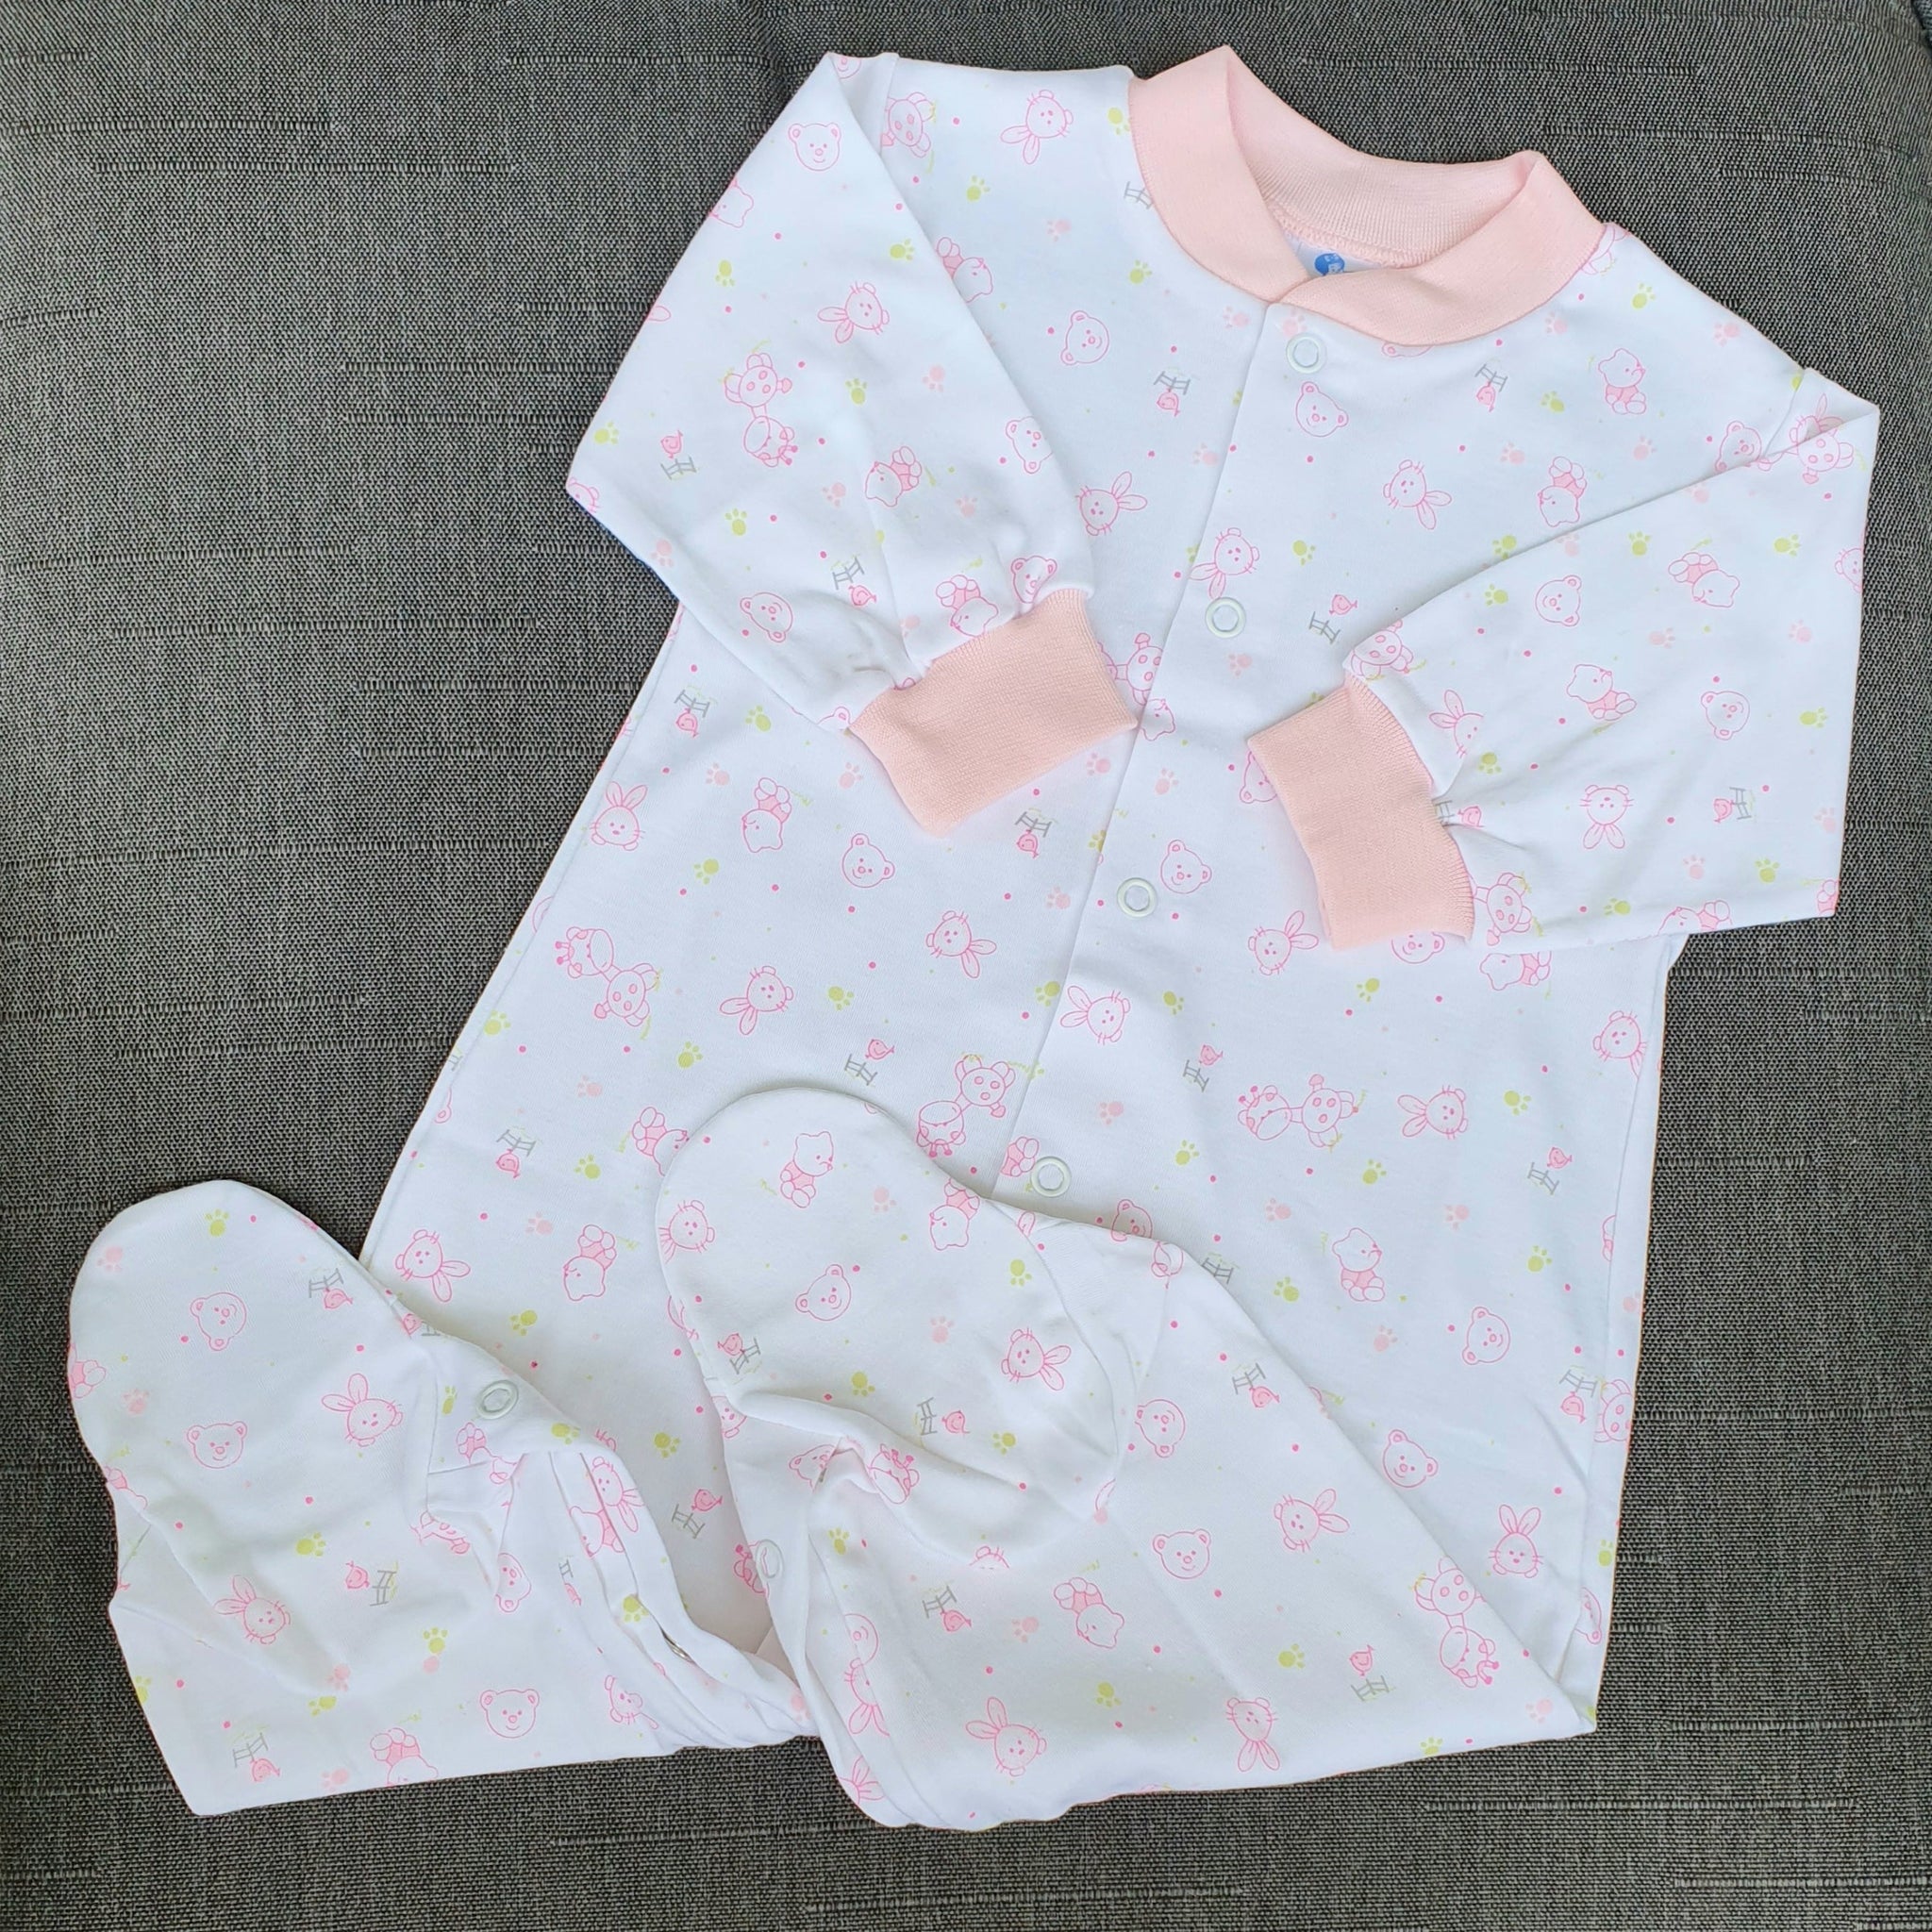 Pijama algodón pima estampado conejitos rosados Ropa bebé - Embarazada - Maternidad - Embarazo - 9lunasshop.com